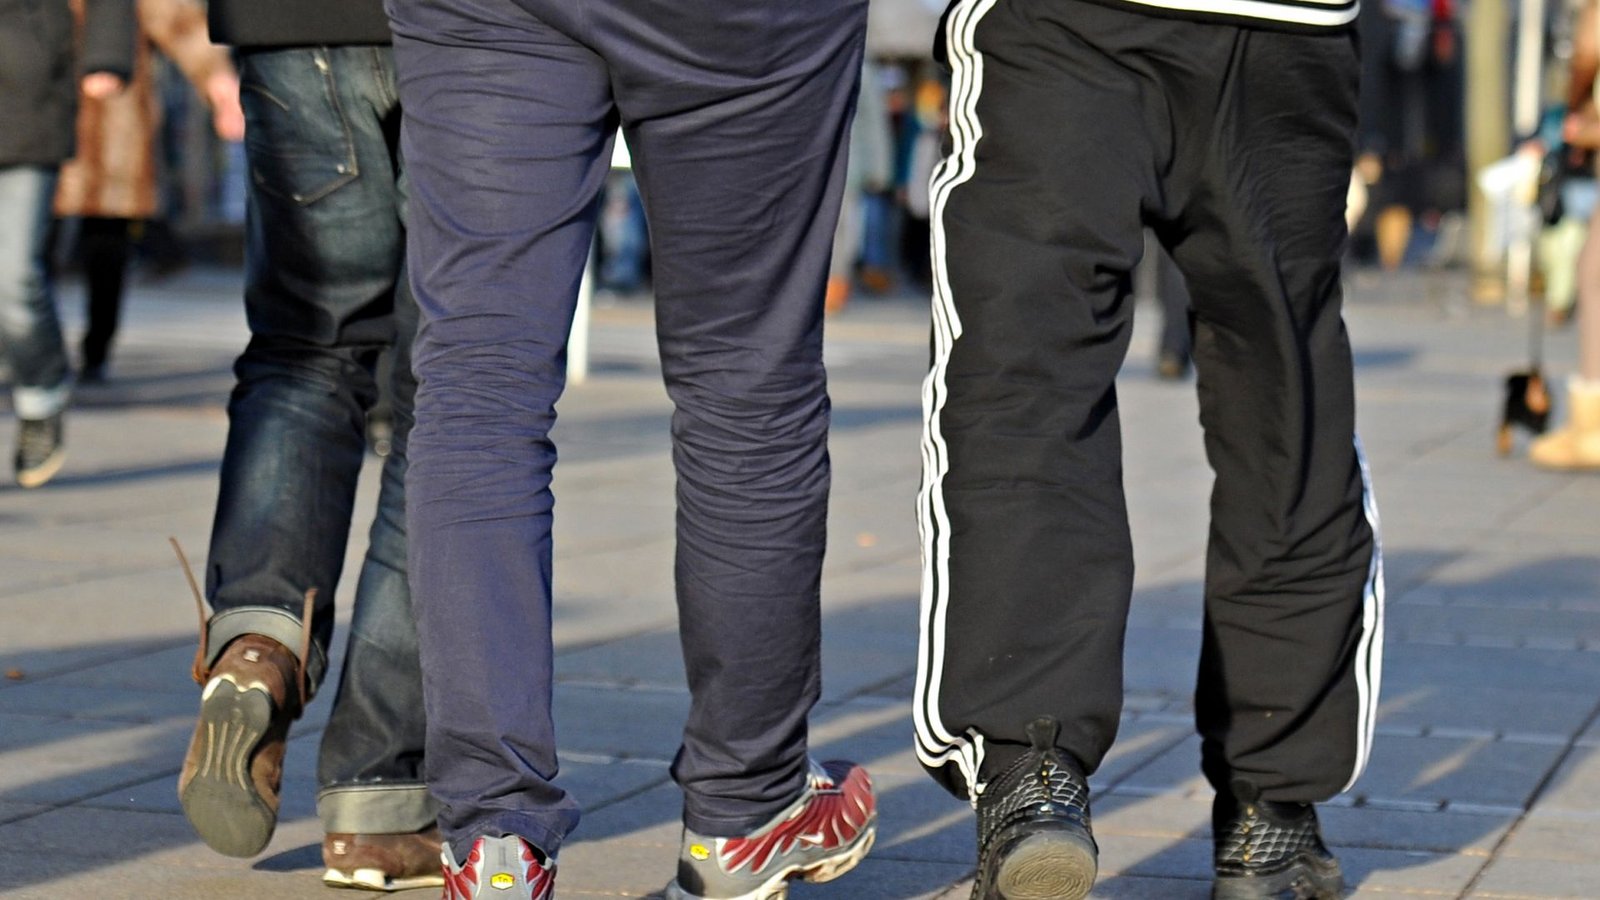 Jogginghosen sind an einer Schule in Wermelskirchen verboten. Neuerdings werden Schüler damit sogar nach Hause geschickt.Foto: Jan-Philipp Strobel/dpa